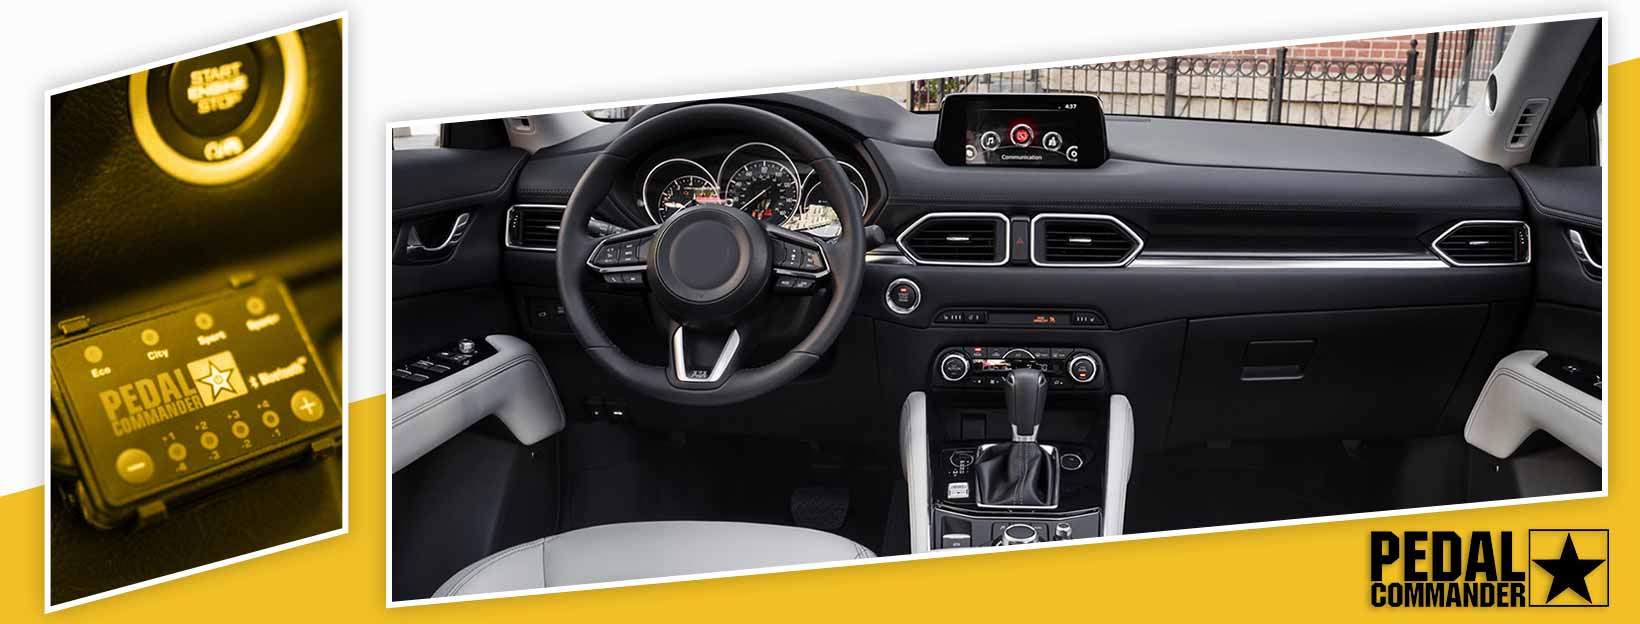 Pedal Commander for Mazda CX5 - interior